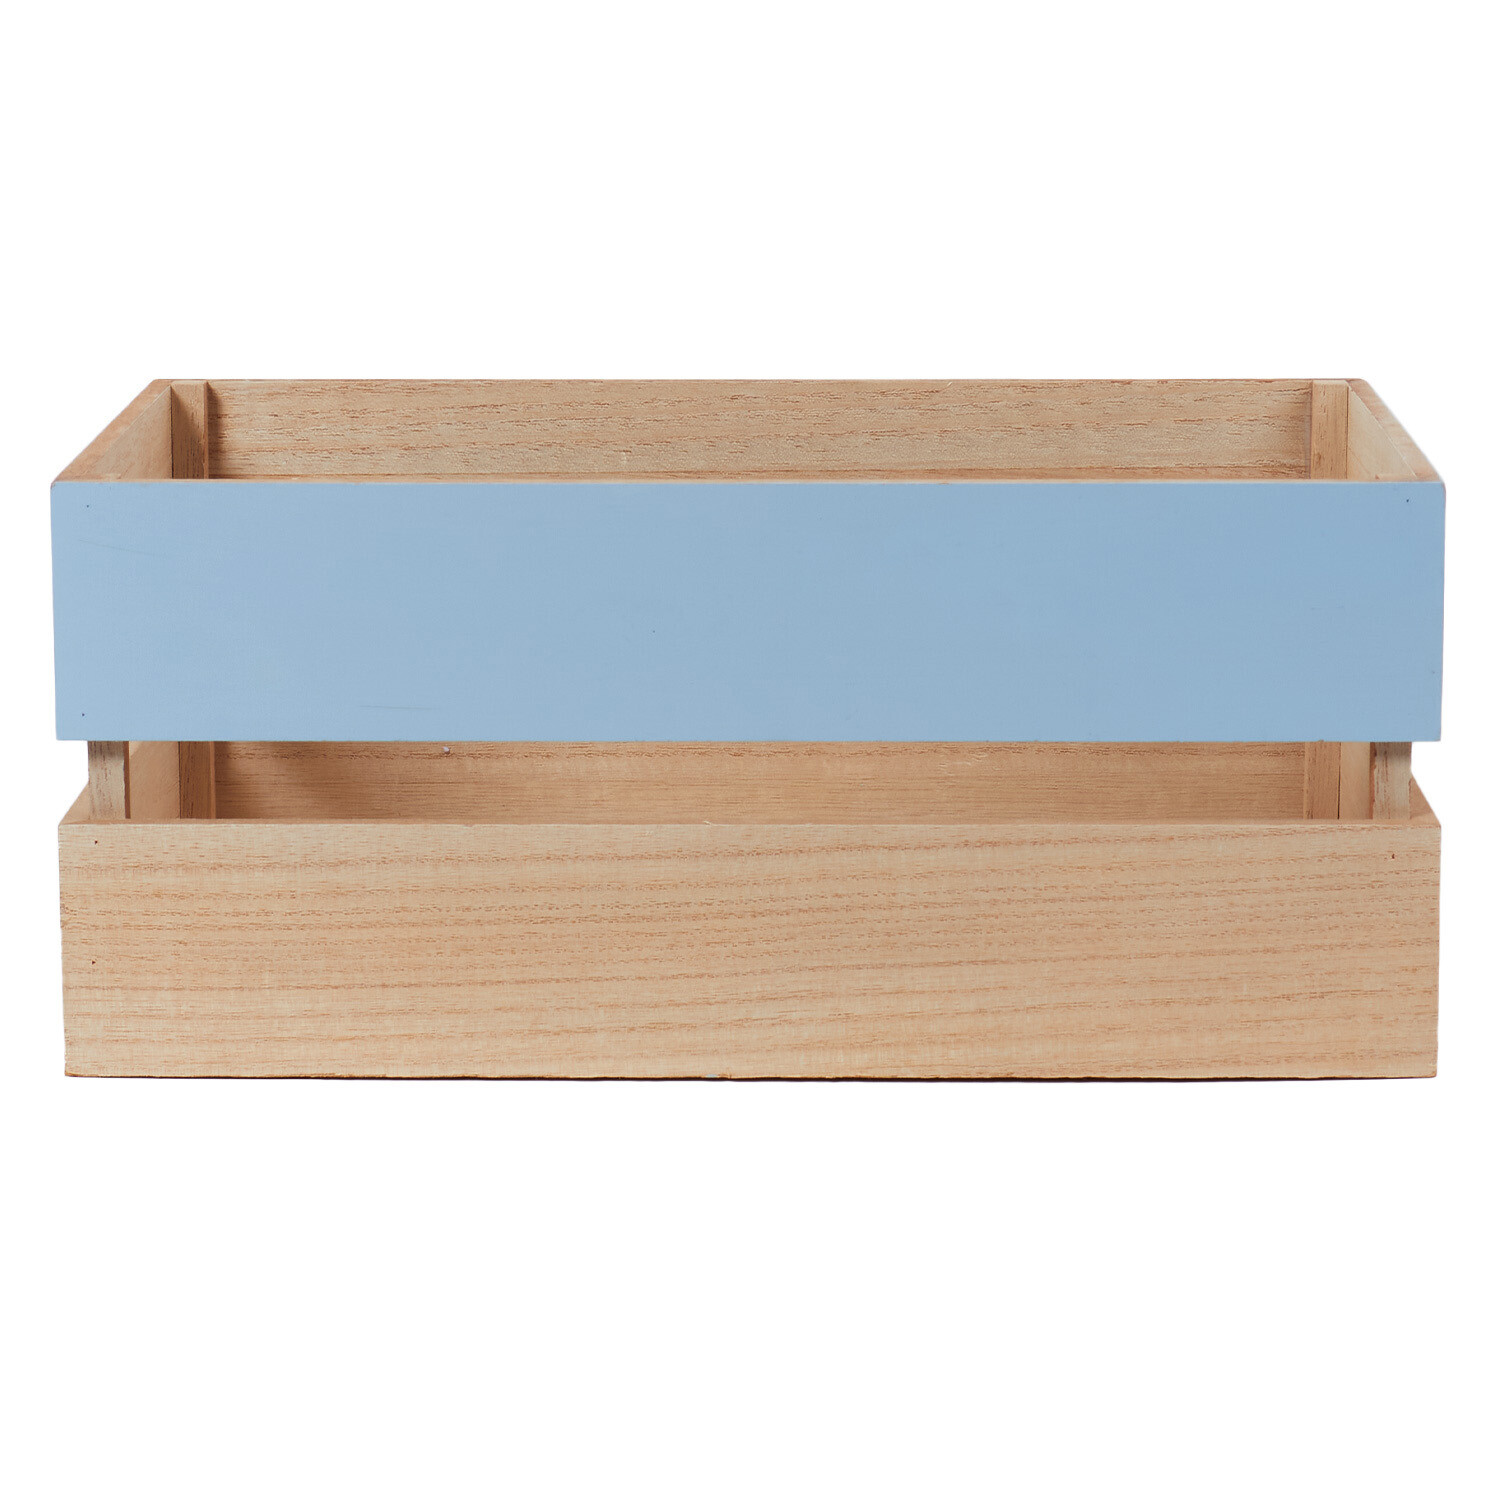 Coastal Storage Box - Blue Image 3